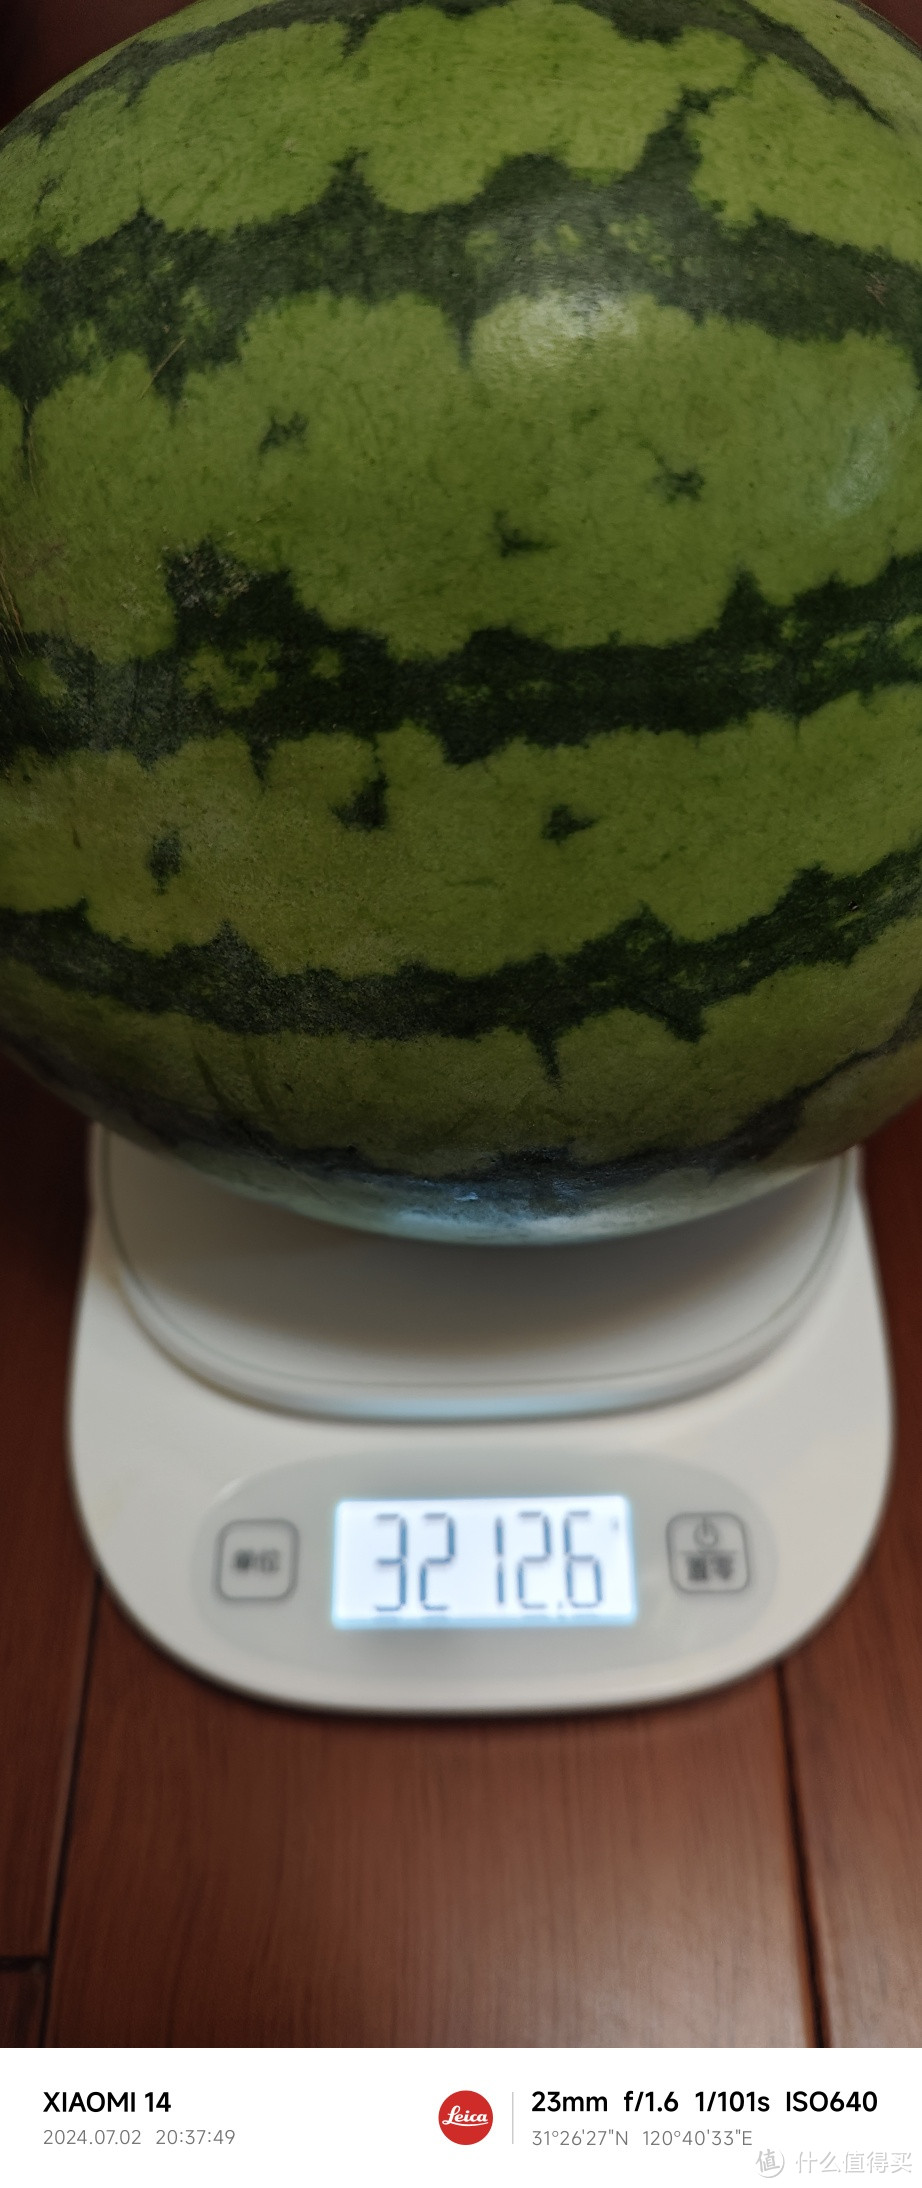 天气热了，苏州的西瓜也涨价了。由6毛钱一斤，涨价到一块钱一斤了。有视频为证！